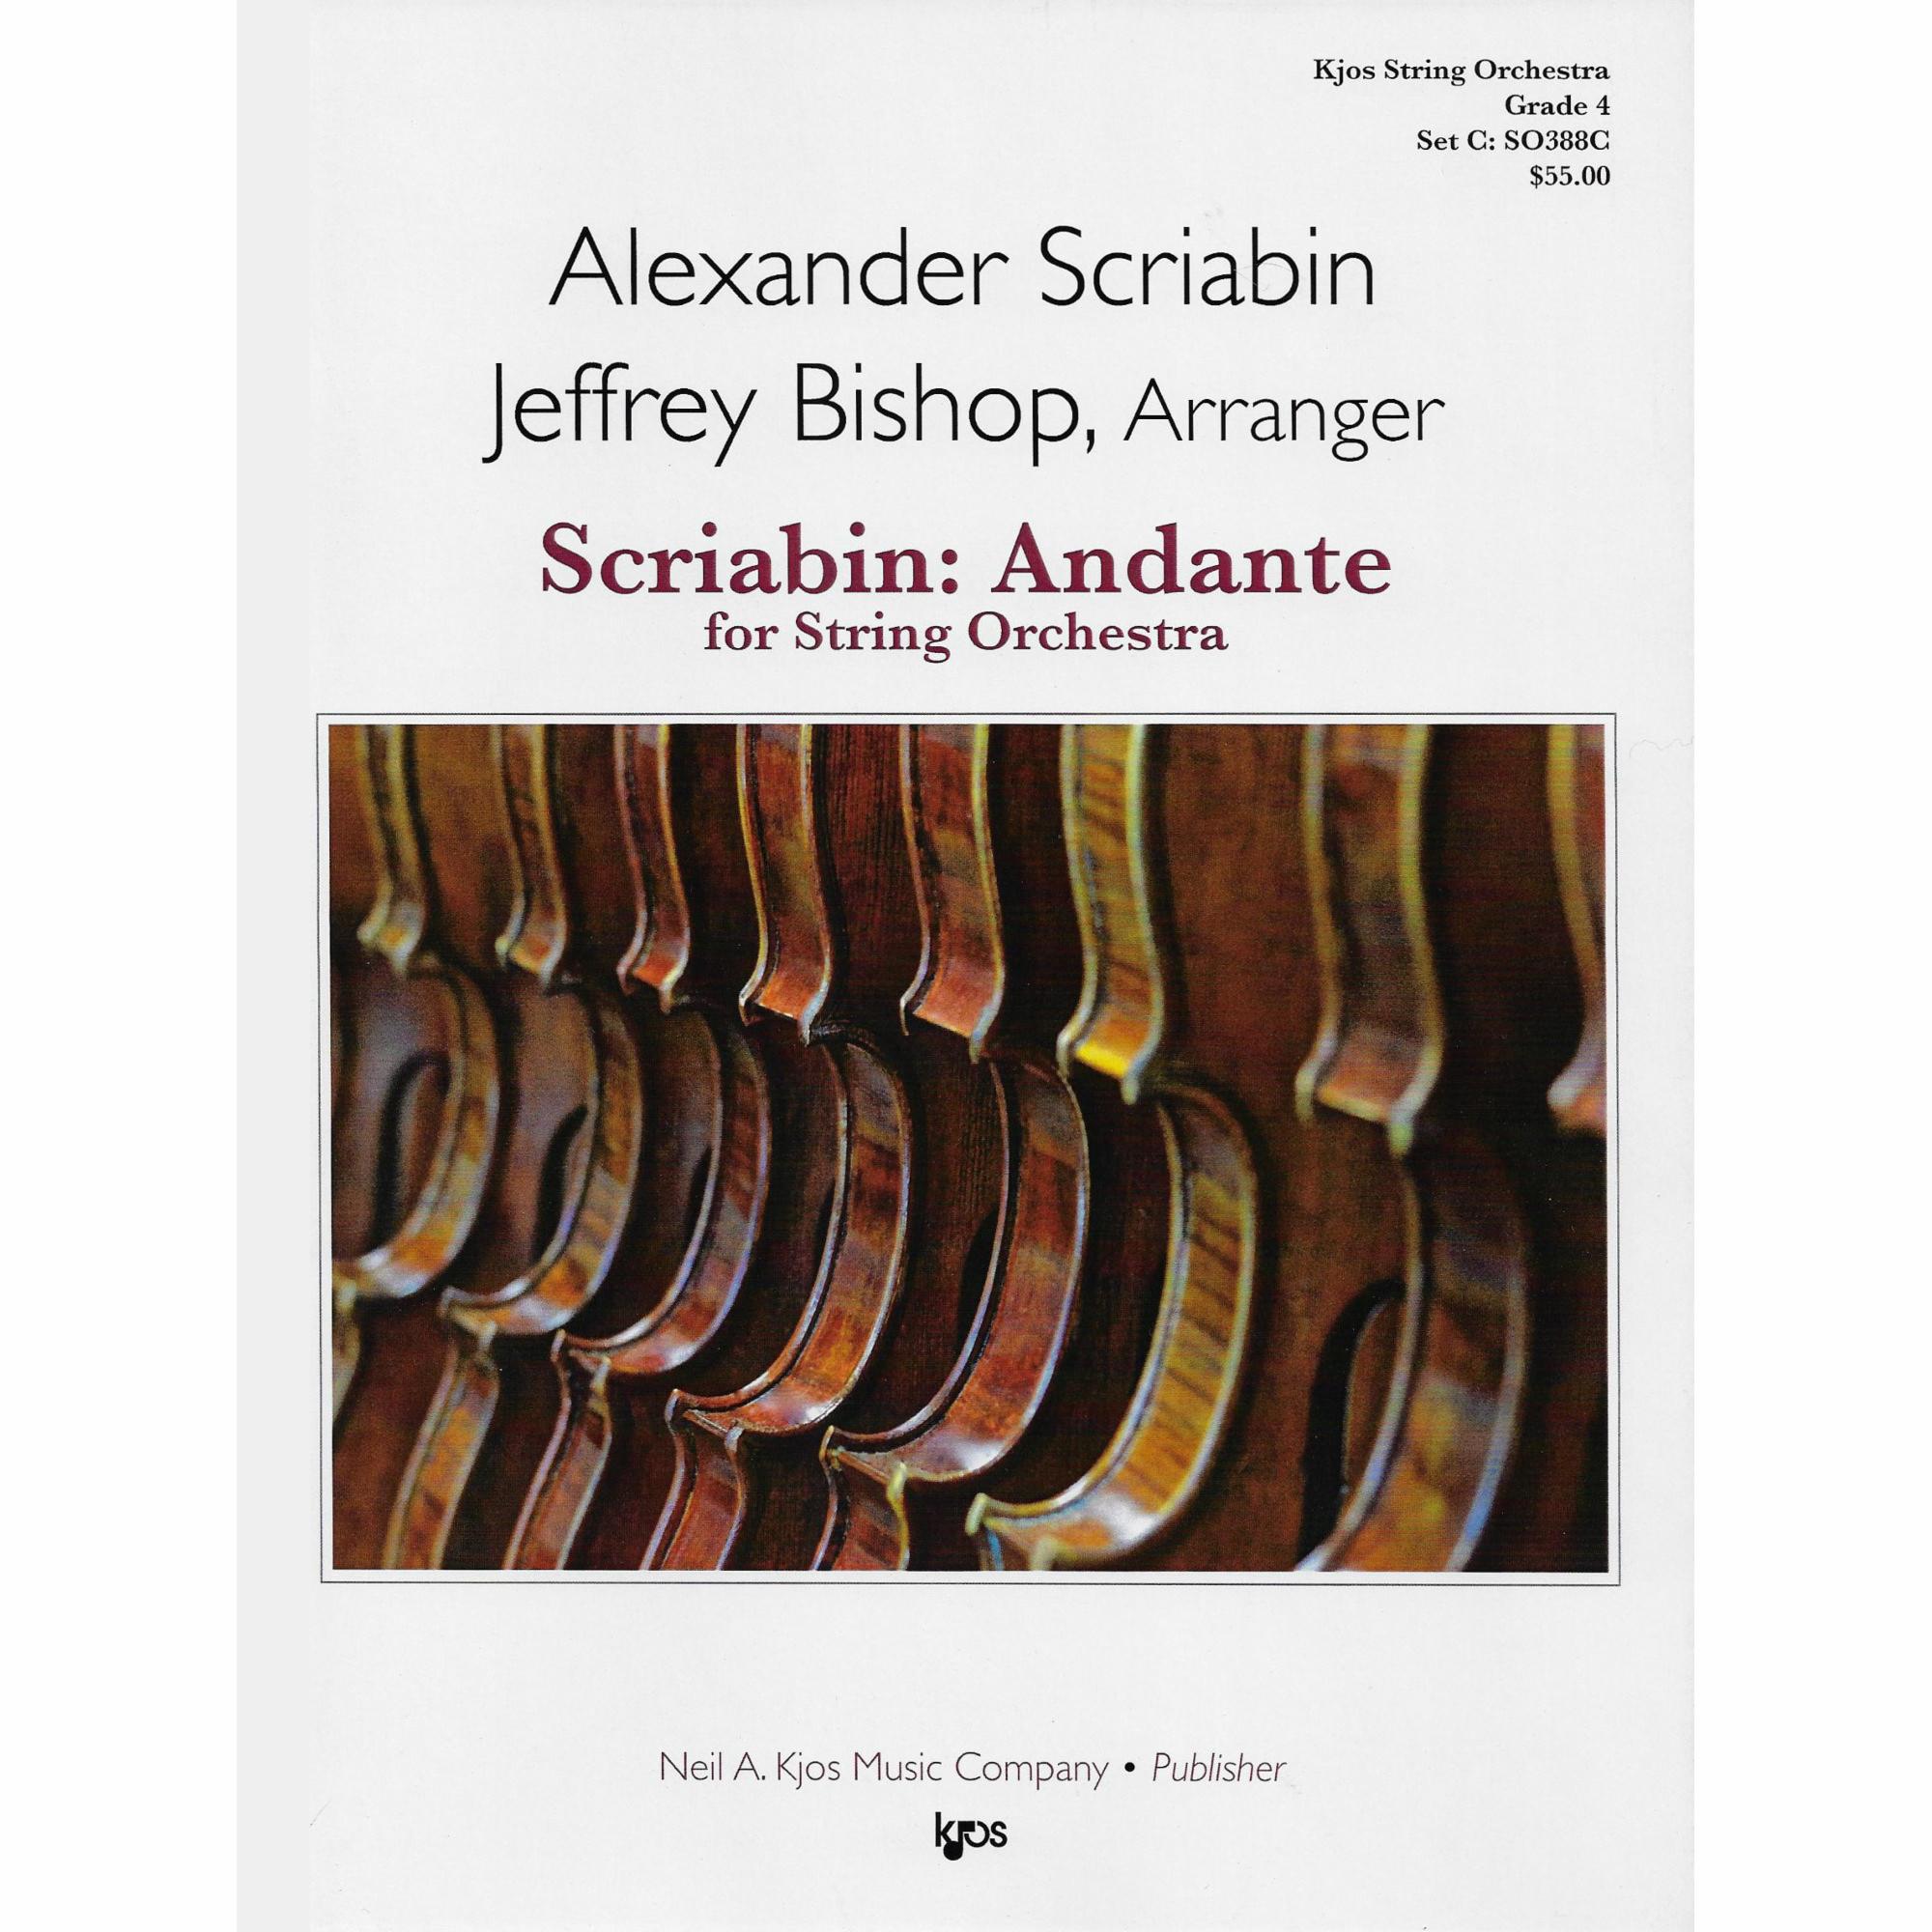 Scriabin: Andante for String Orchestra